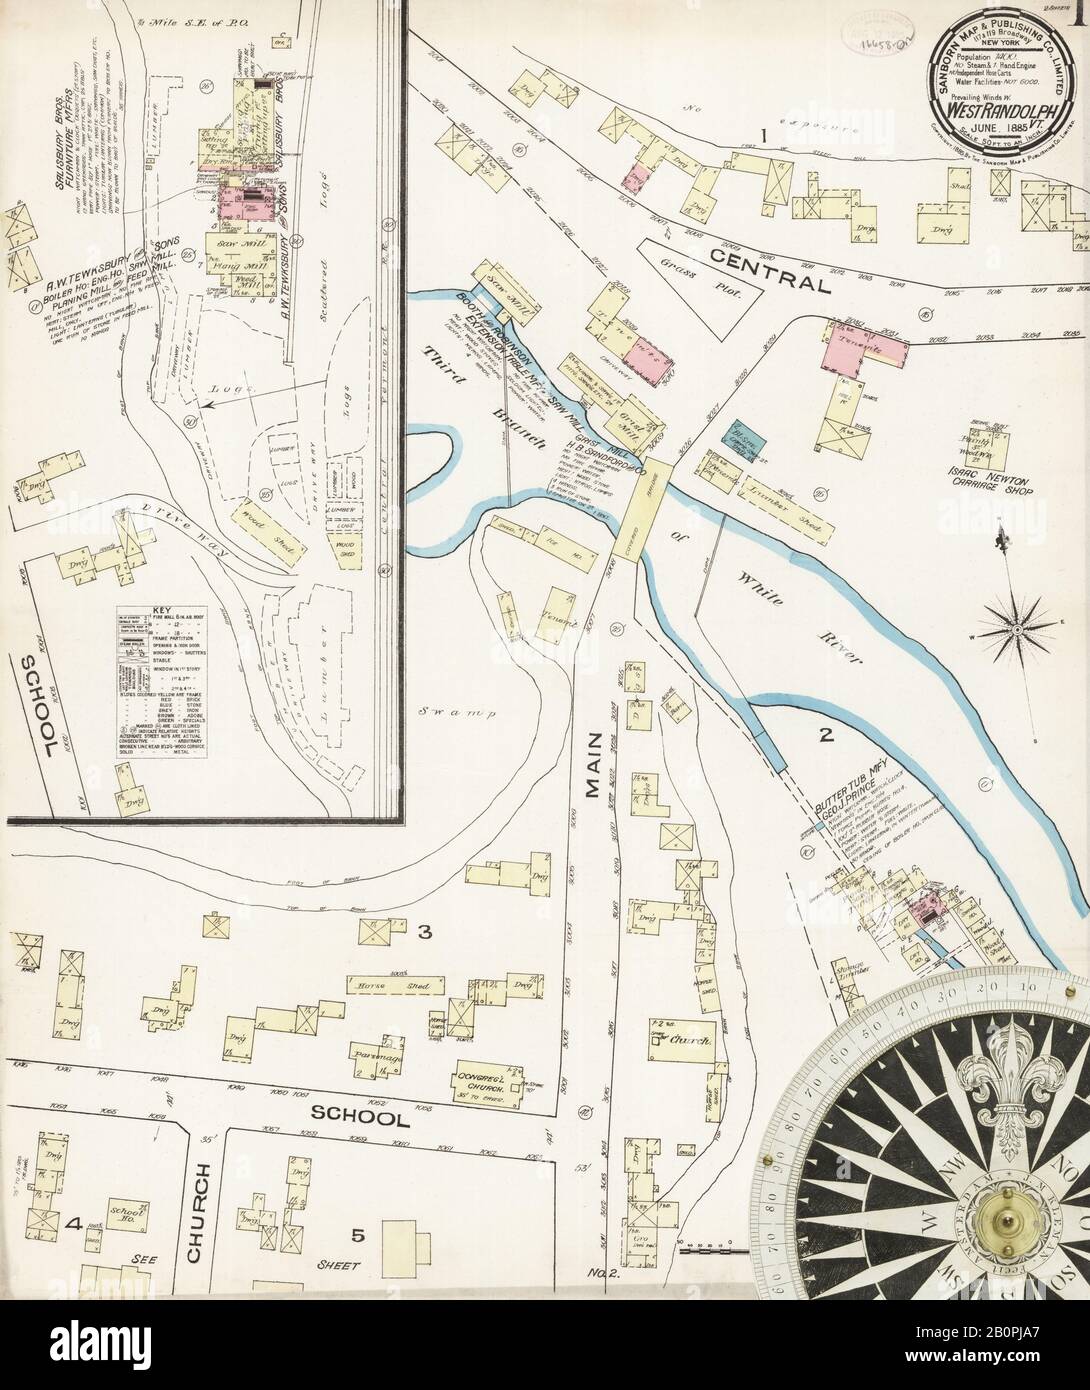 Image 1 De La Carte D'Assurance-Incendie Sanborn De West Randolph, Comté D'Orange, Vermont. Juin 1885. 2 feuille(s), Amérique, plan de rue avec un compas du dix-neuvième siècle Banque D'Images